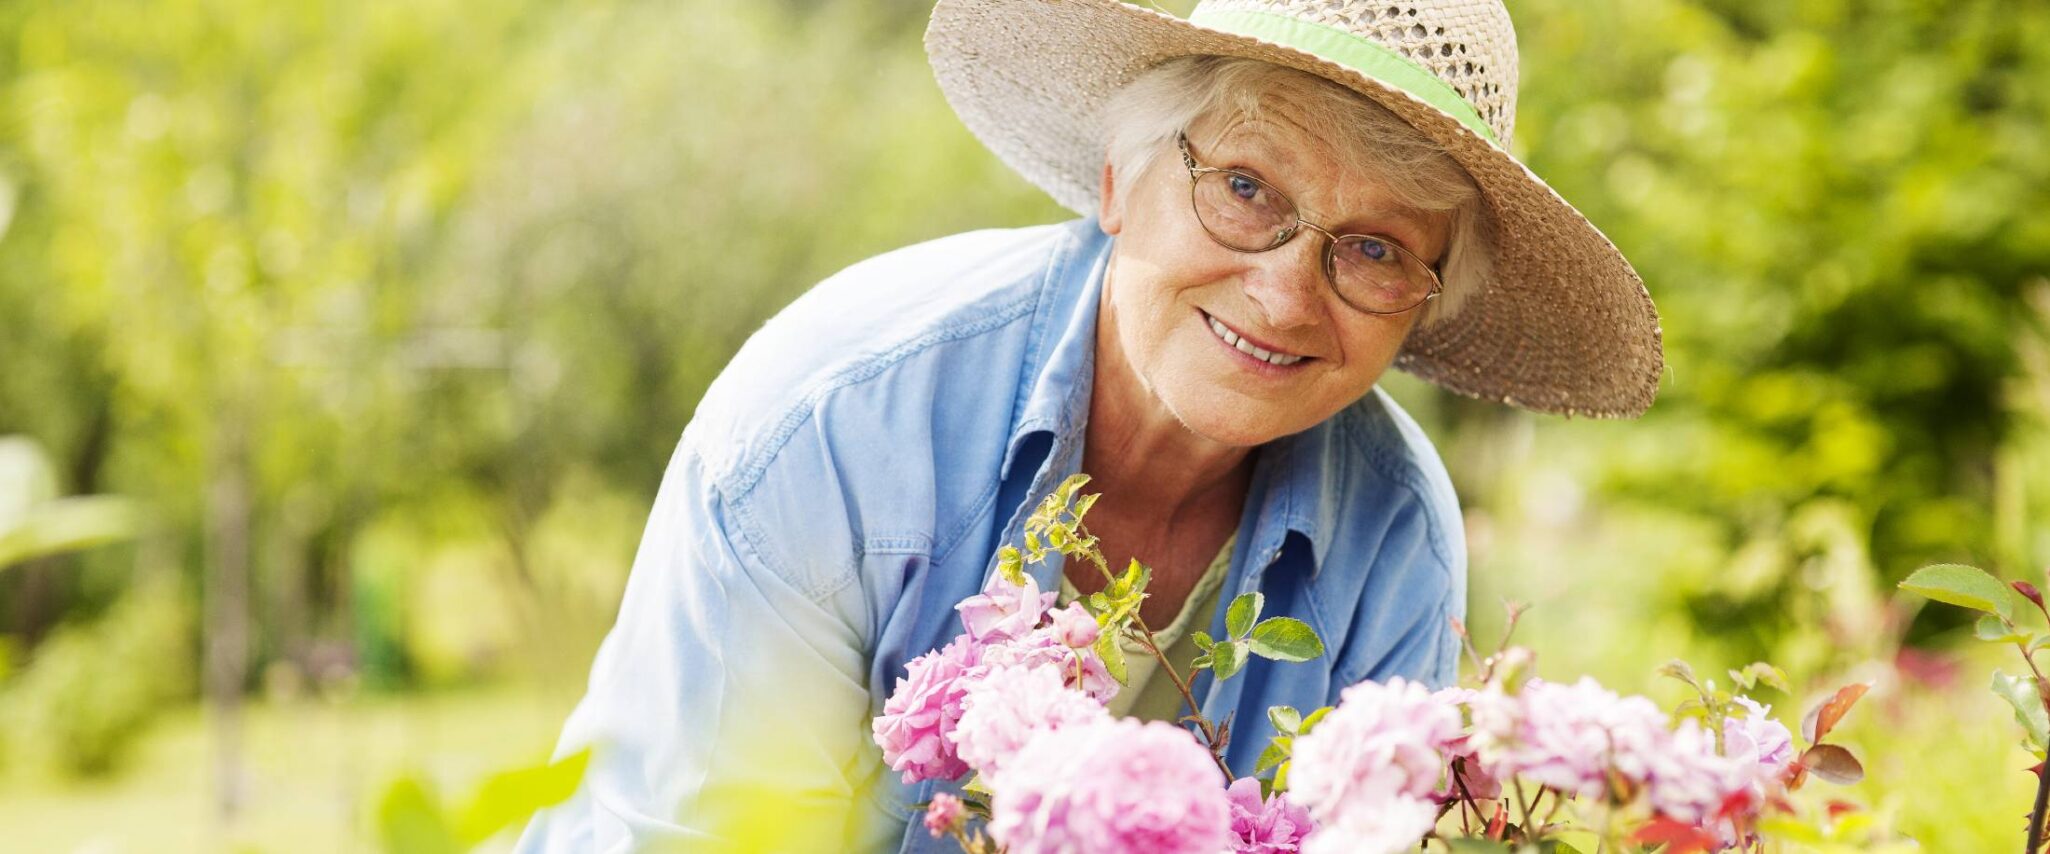 senior smiling while gardening